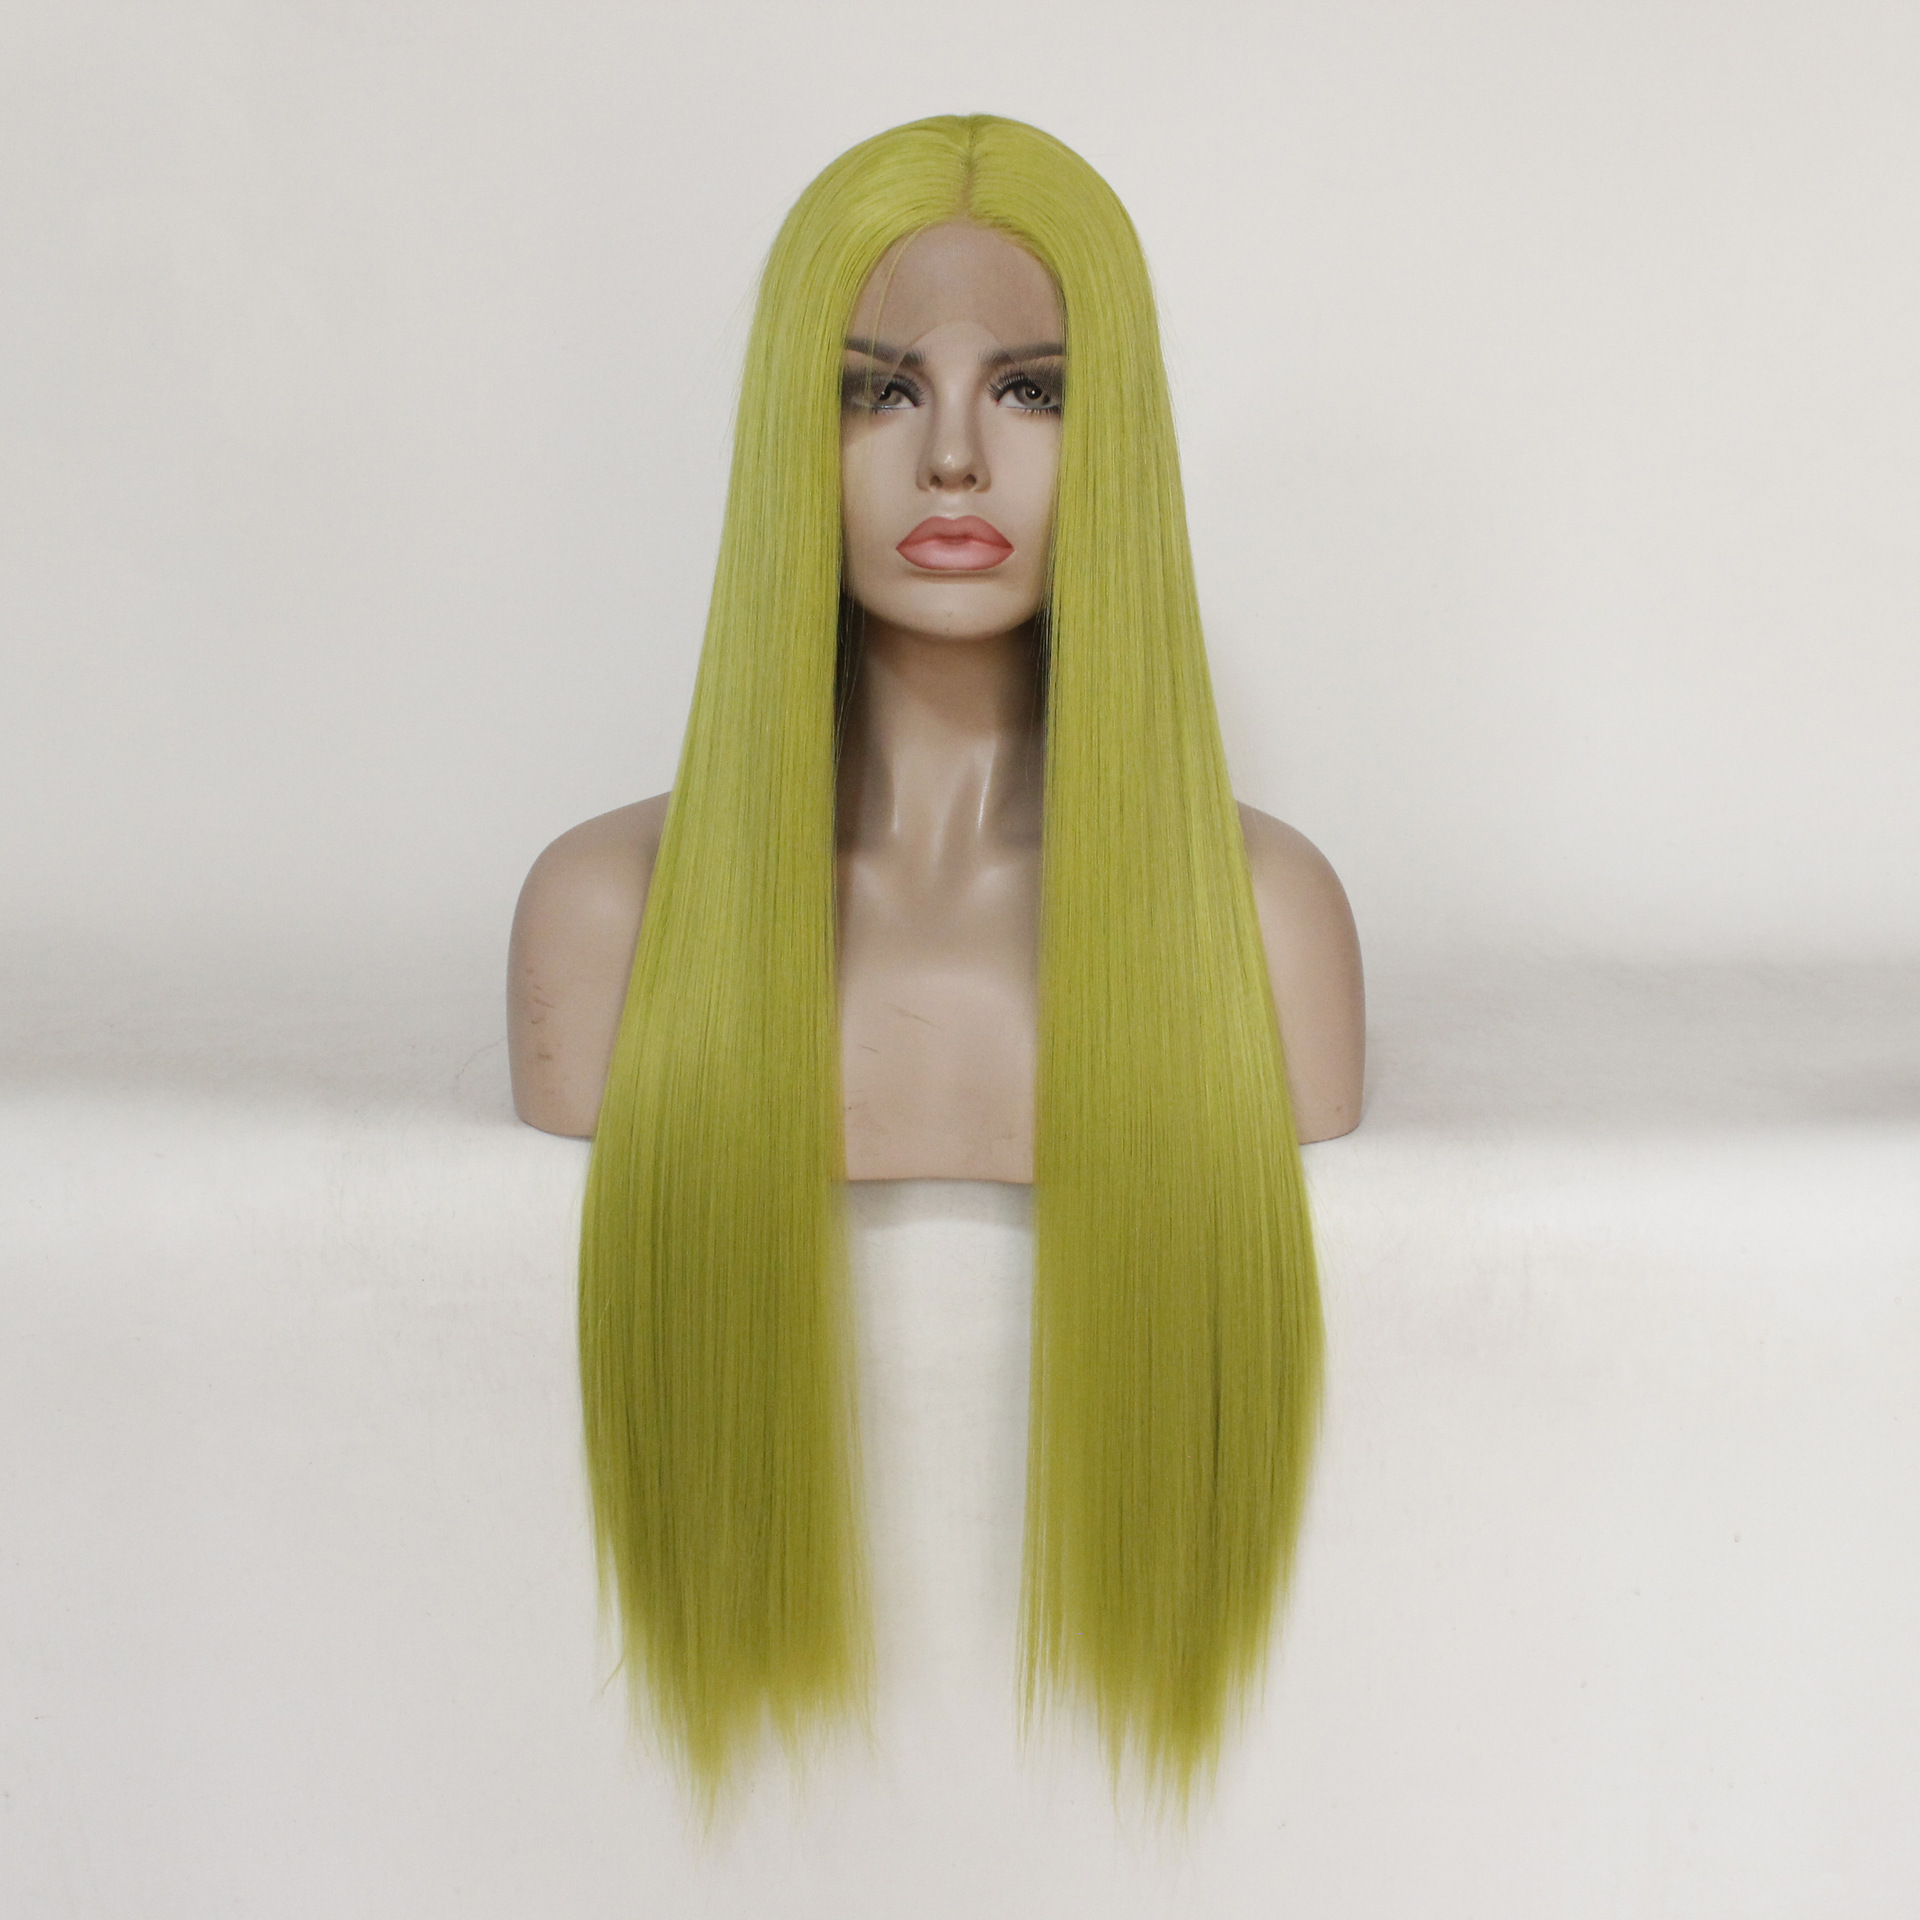 欧美假发女士前蕾丝化纤新品黄绿色长直发假发厂家现货批发